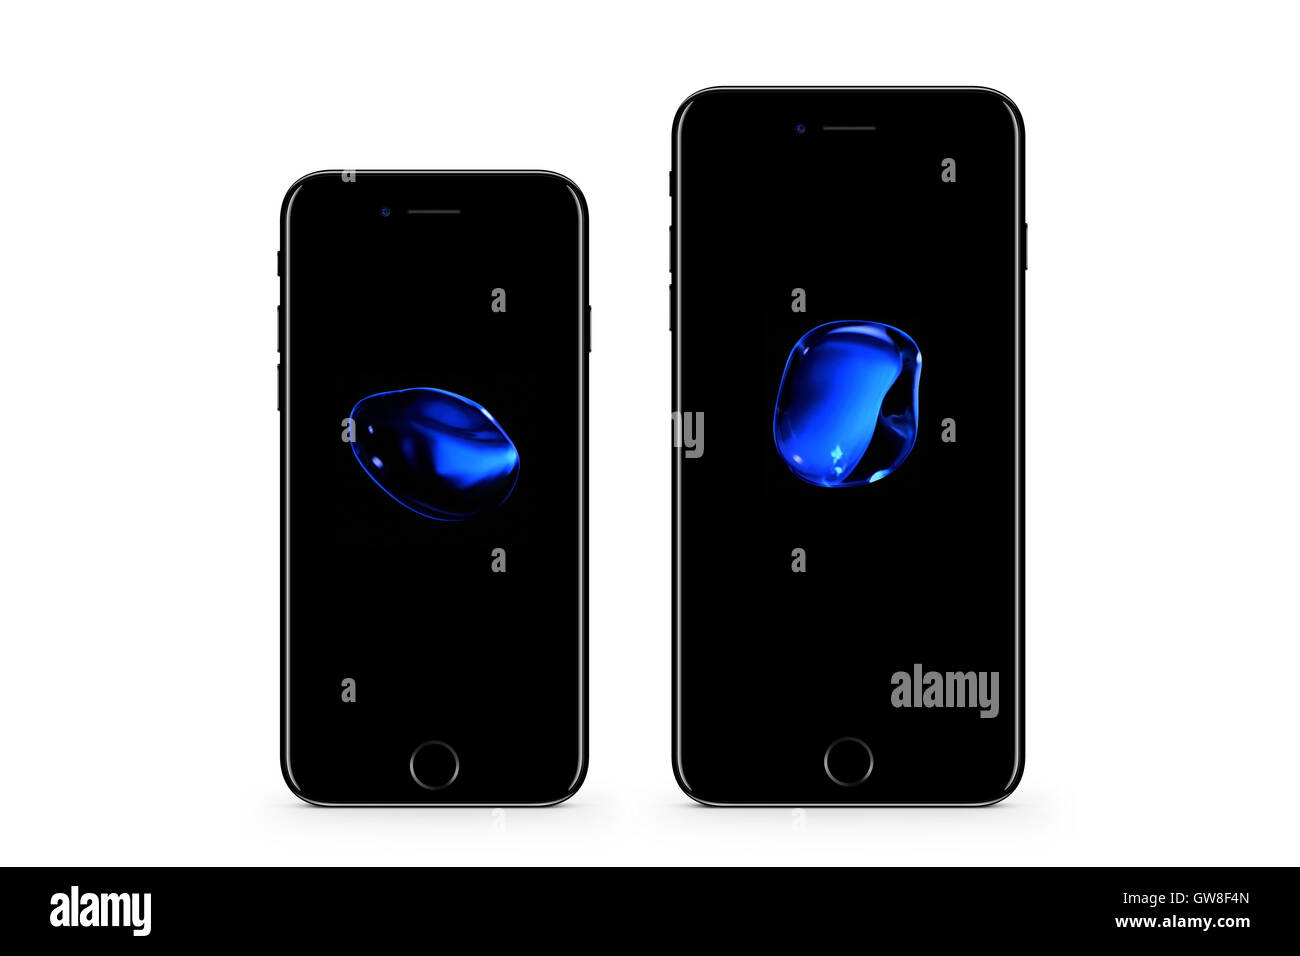 Generati digitalmente immagine del nuovo telefono cellulare, iphone 7 e iphone 7 plus. Foto Stock